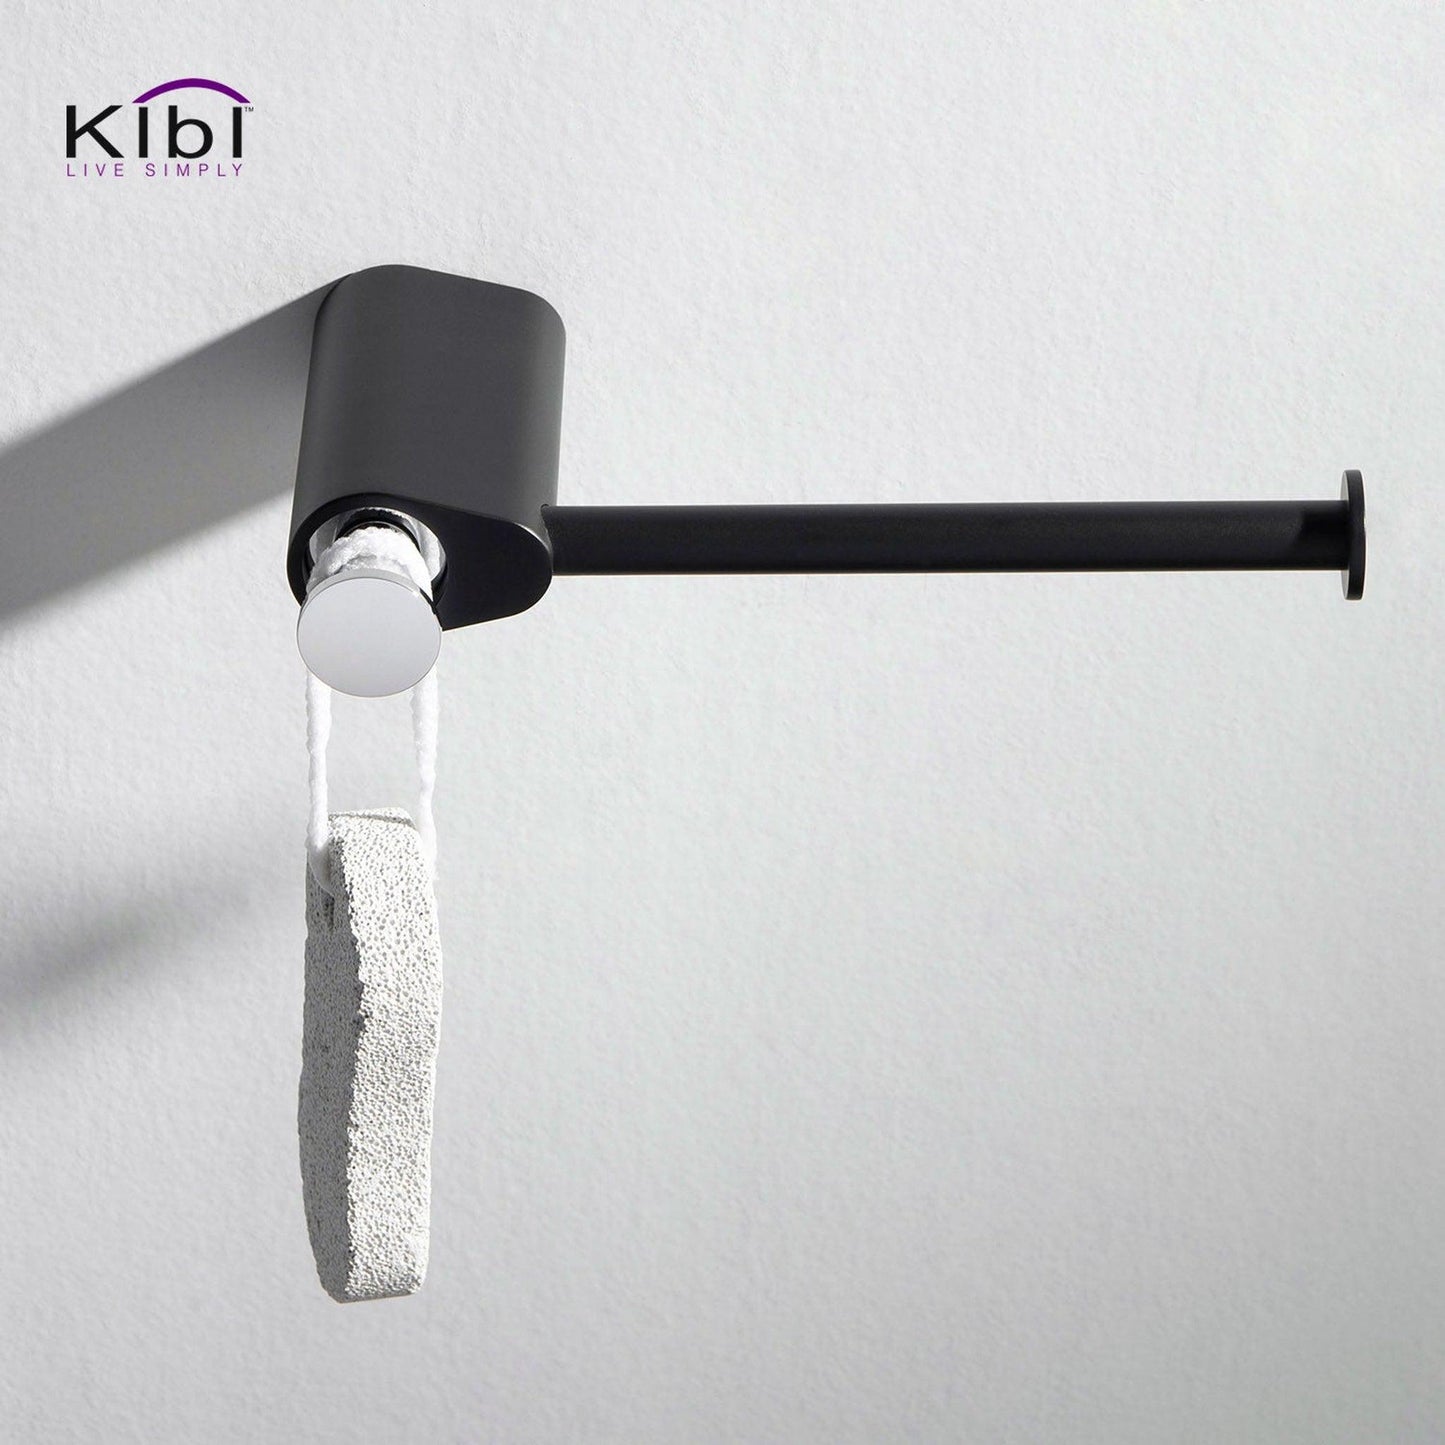 KIBI Volcano Brass Bathroom Tissue Holder in Chrome Black Finish